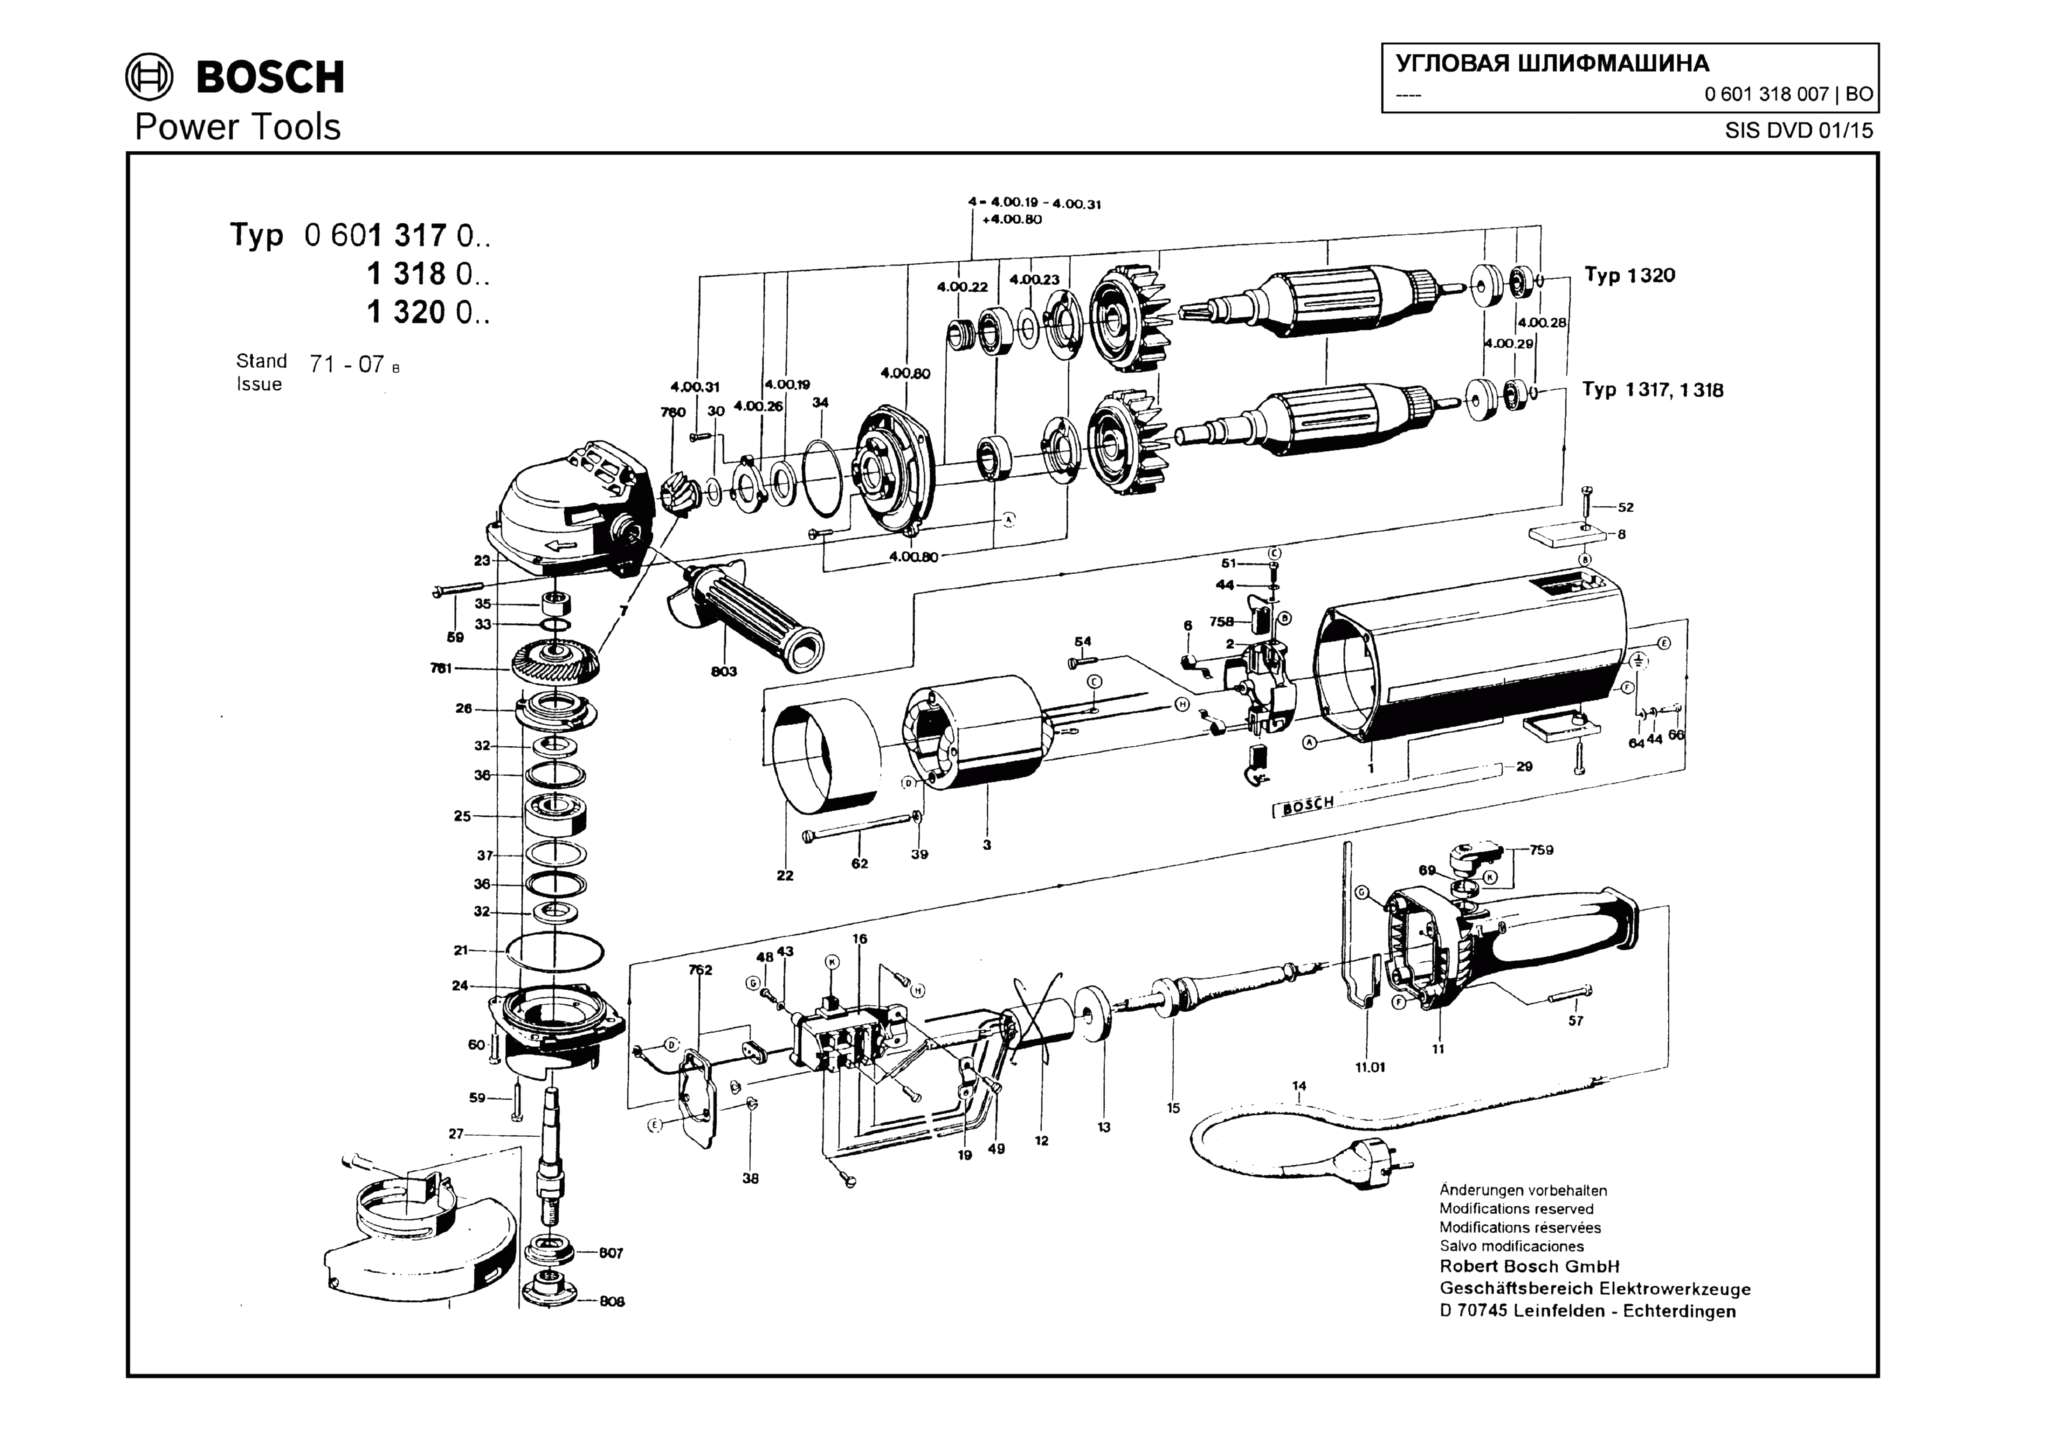 Запчасти, схема и деталировка Bosch (ТИП 0601318007)